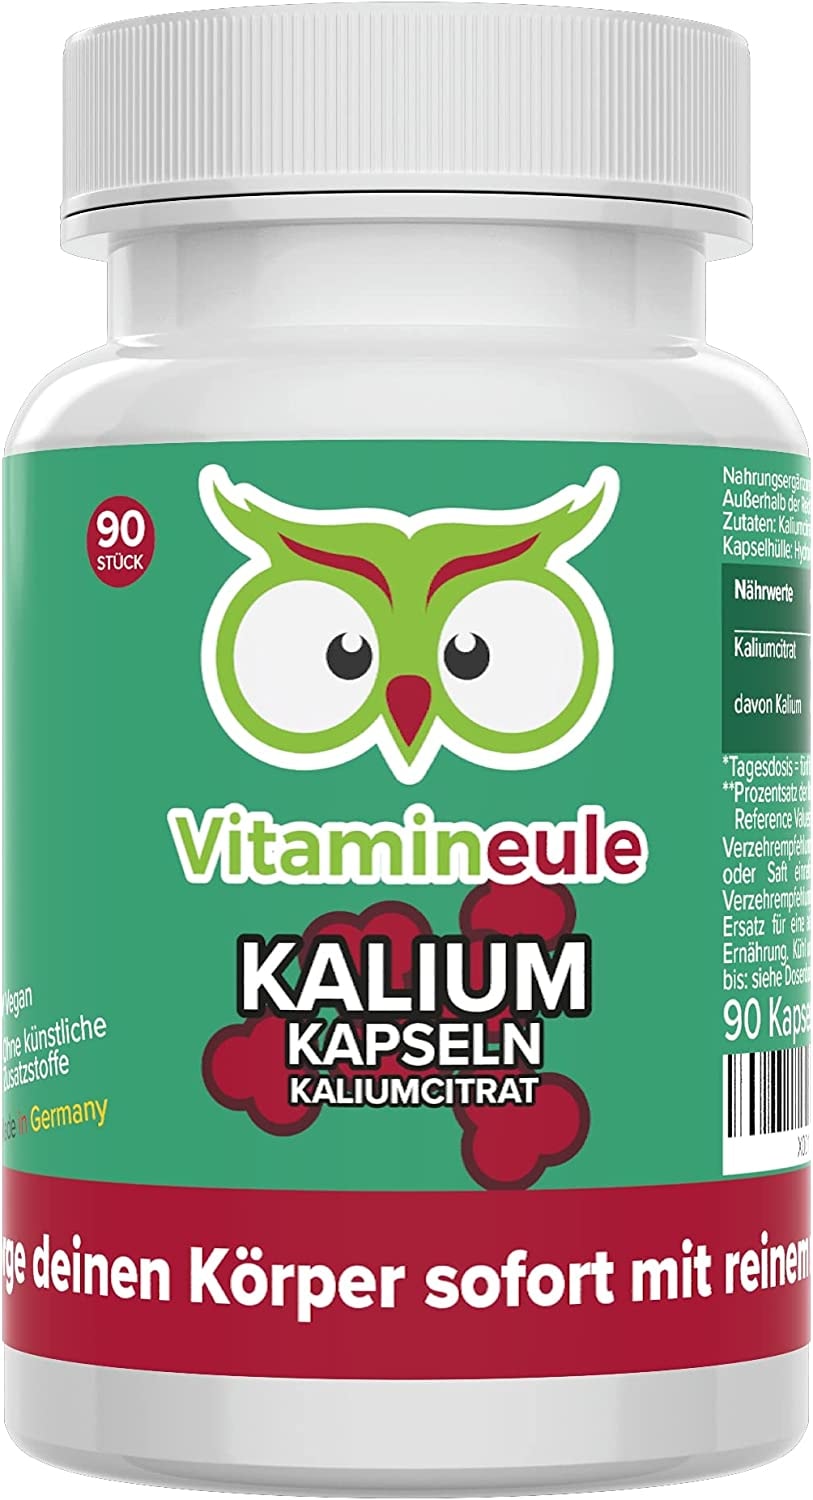 ‎Vitamineule - Kalium Kapseln - hochdosiert mit 200mg Kalium pro Kapsel - reines Kaliumcitrat ohne künstliche Zusätze - Qualität aus Deutschland - vegan - Vitamineule®